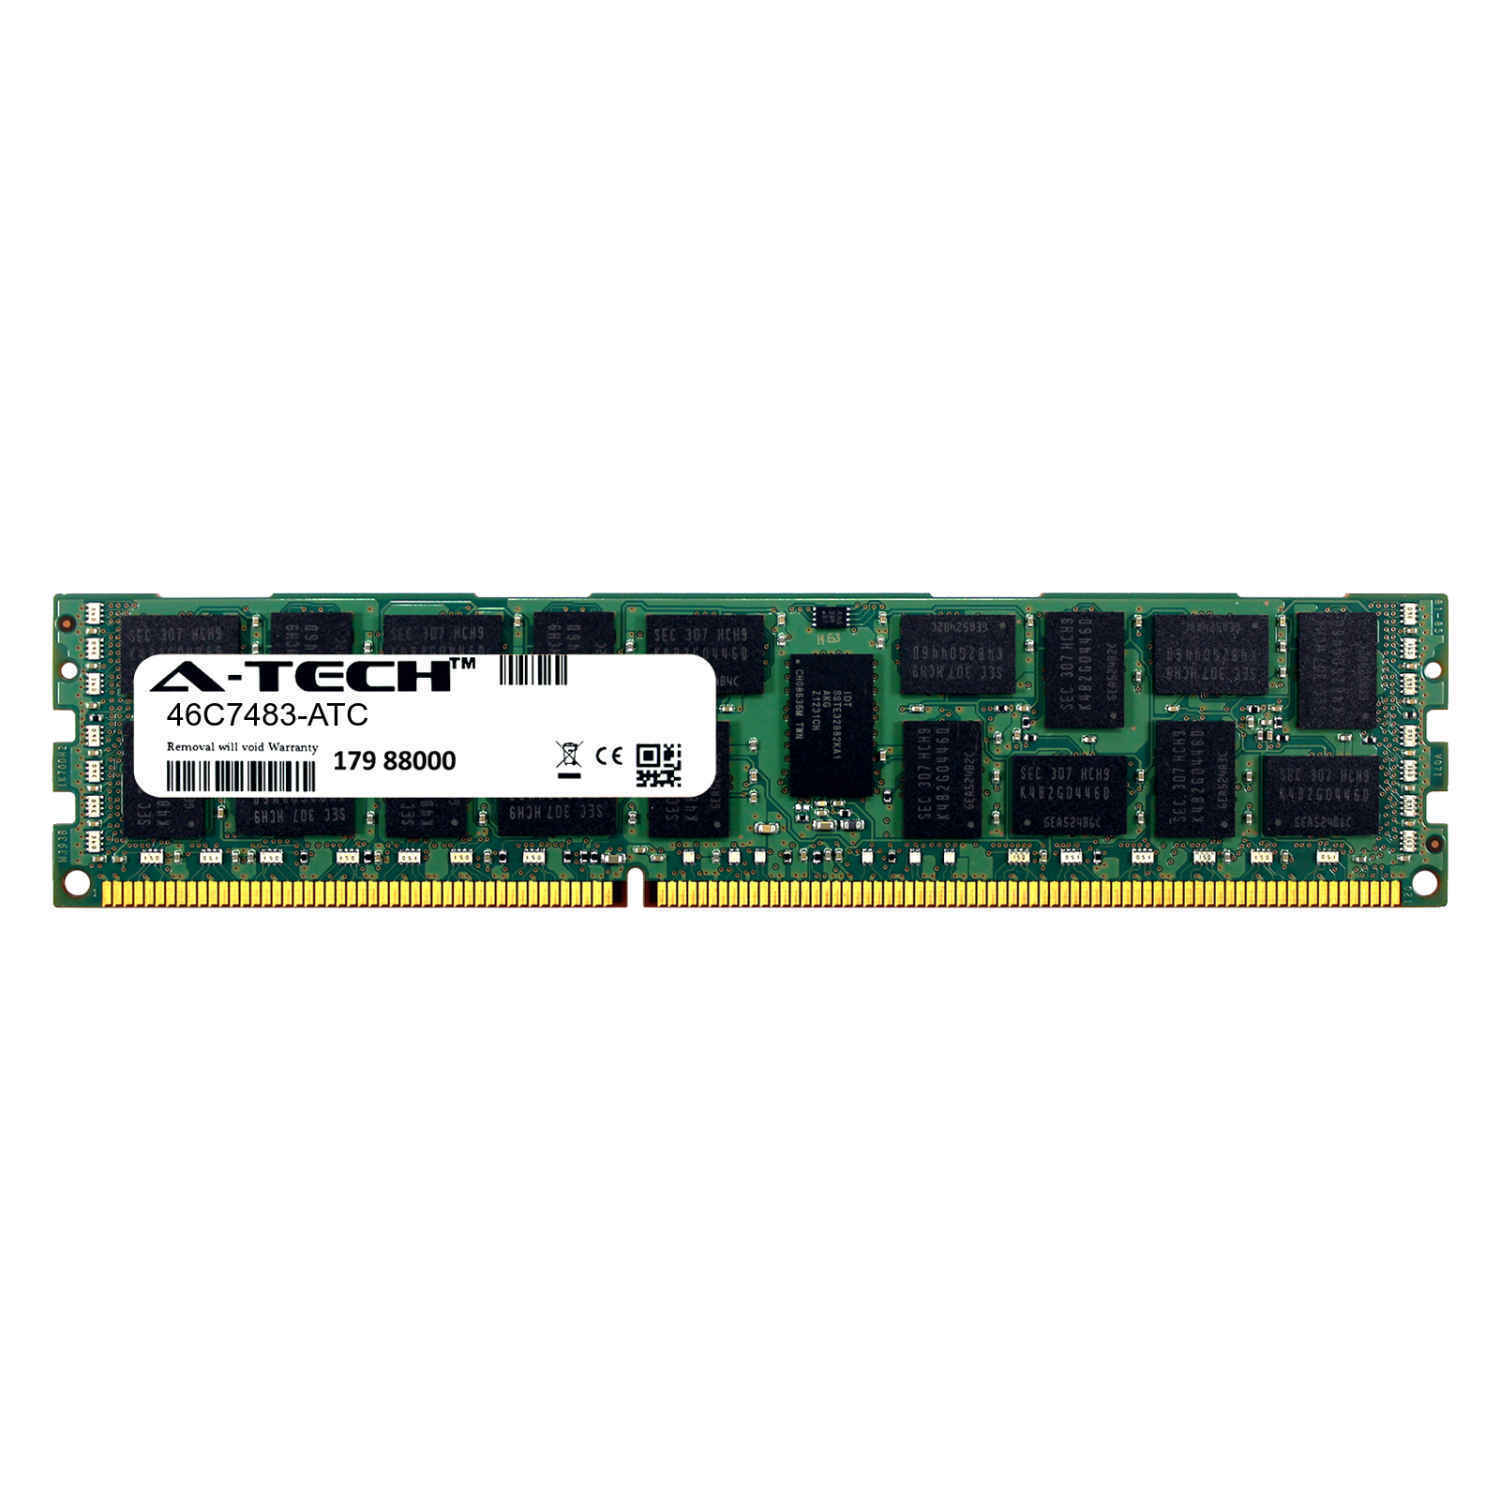 16GB DDR3 PC3-8500R 1066MHz RDIMM (IBM 46C7483 Equivalent) Server Memory RAM